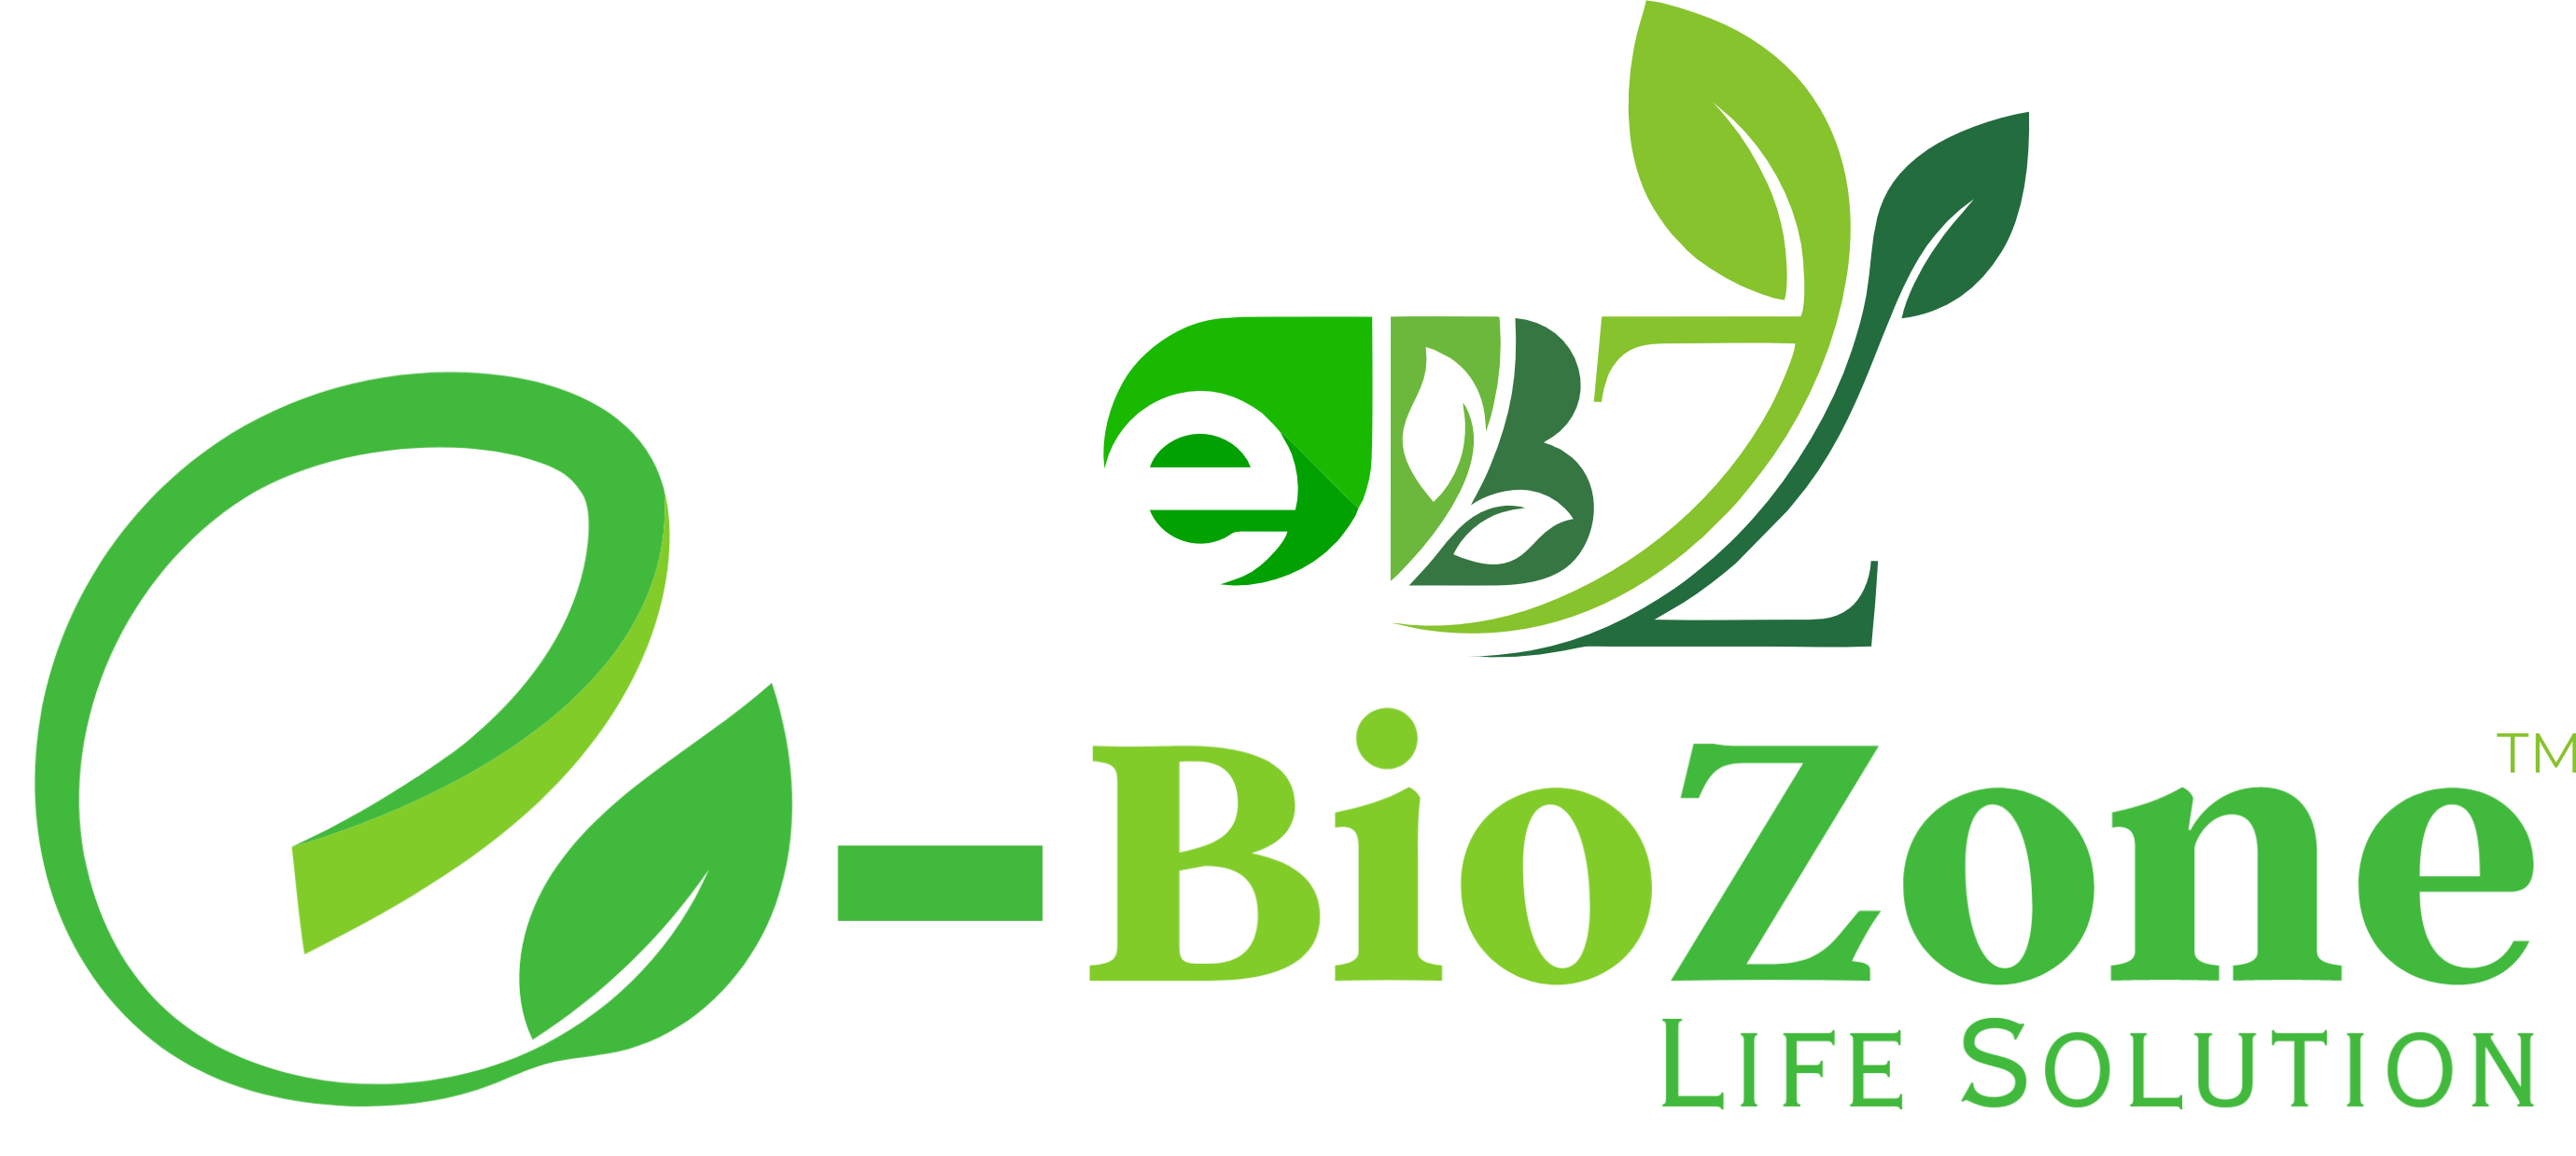 E-BioZone – Your One-Stop Destination